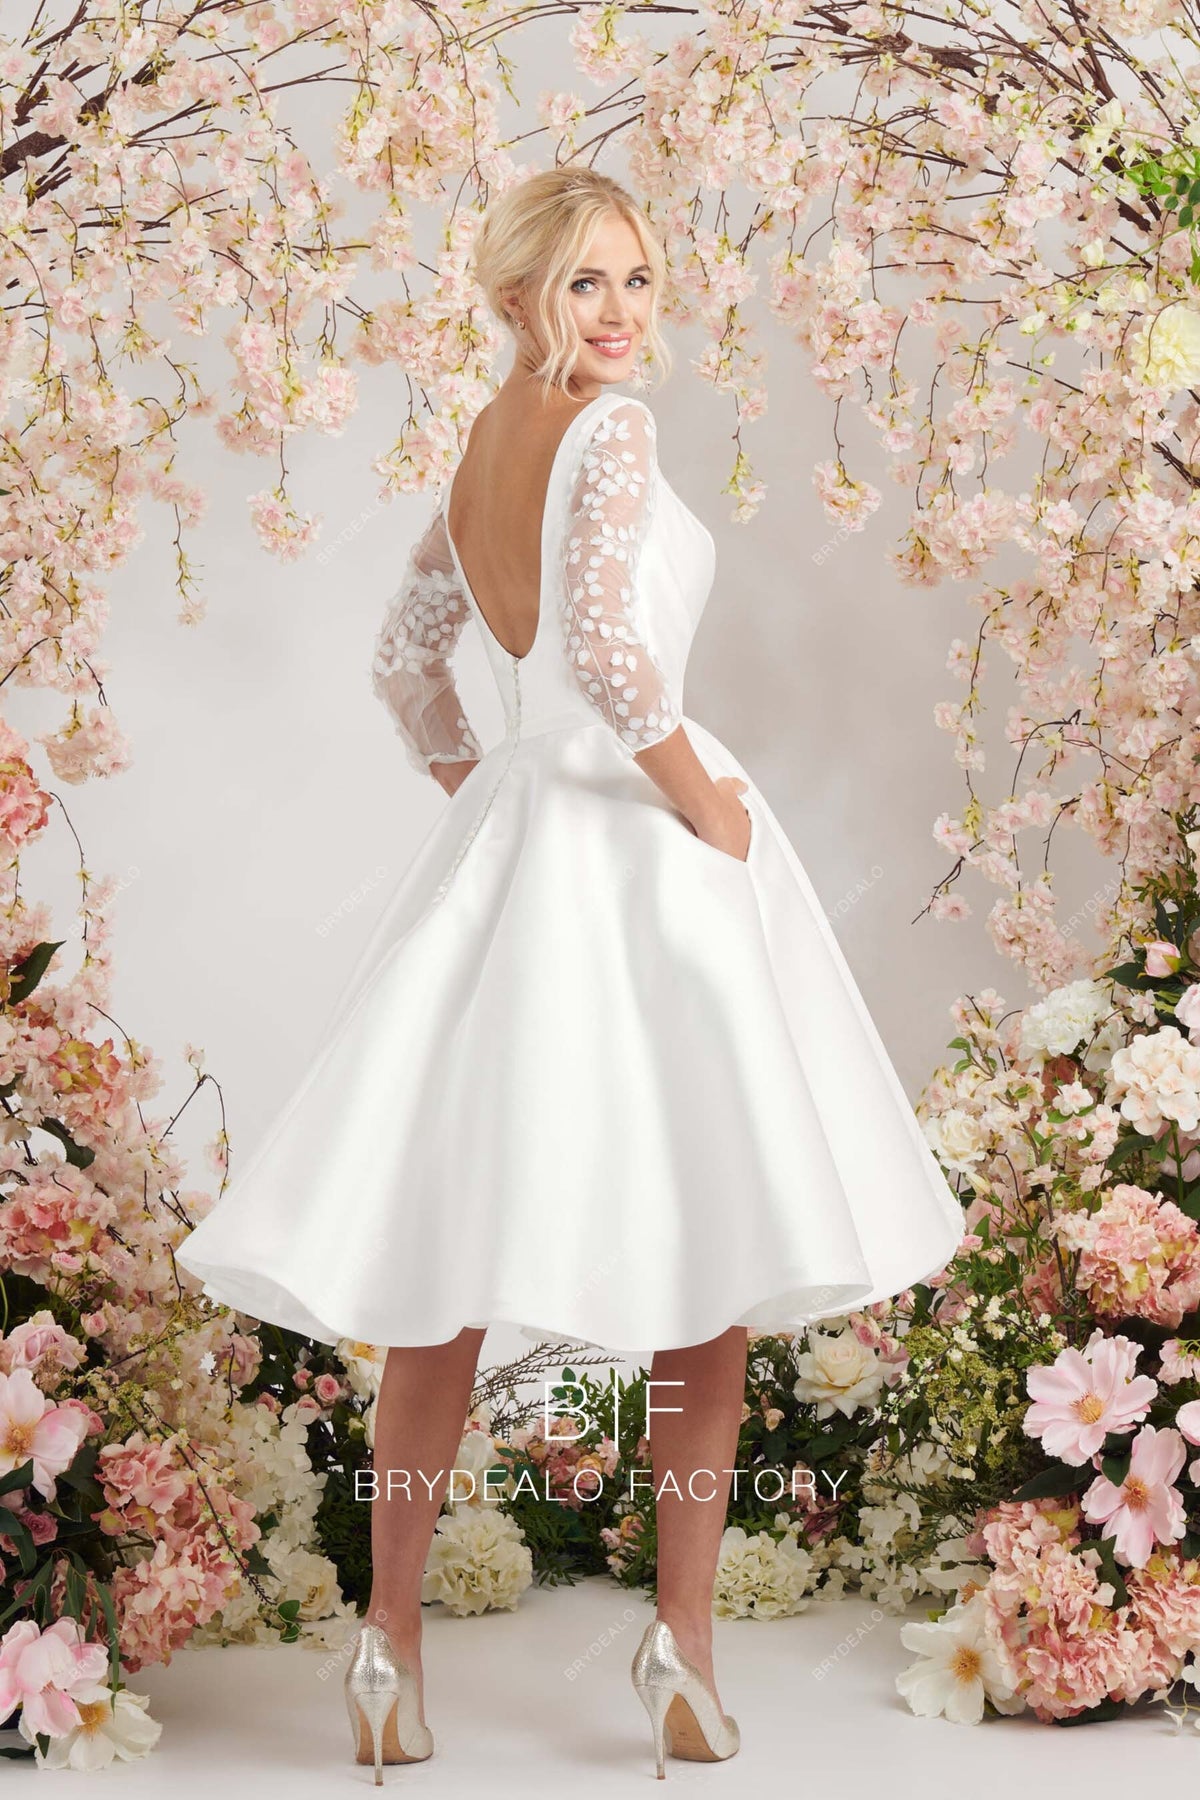 Elegant Satin Bateau Neckline Lace Short Tea Length Bridal Dress Vintage Style Puffy Aline Skirt Wedding Dress Boatneck Open Back Pockets